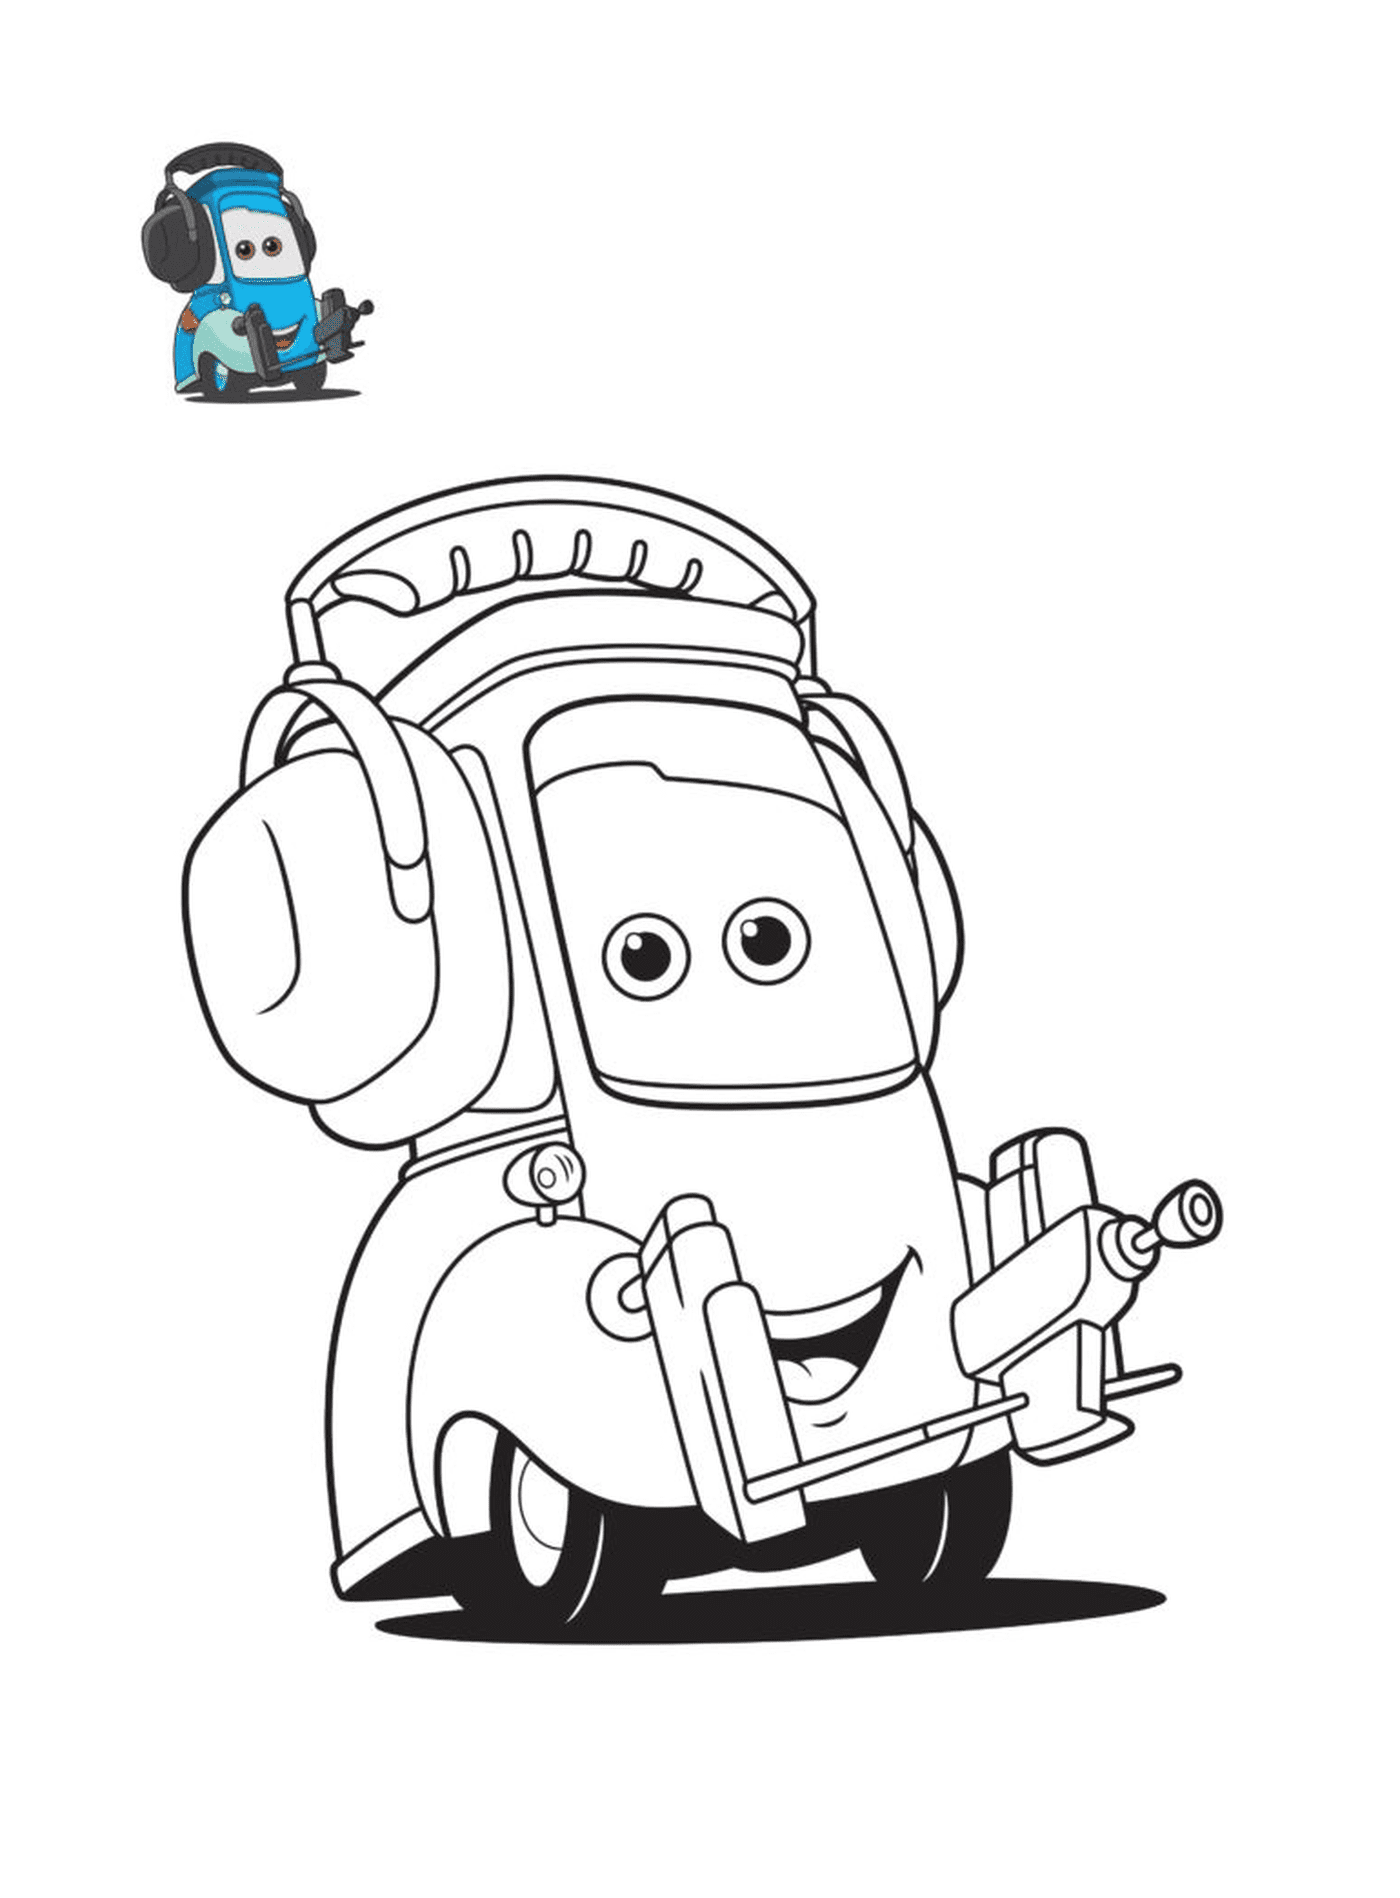  Cars 3, Guido, personaje de la película Cars, un coche con auriculares 